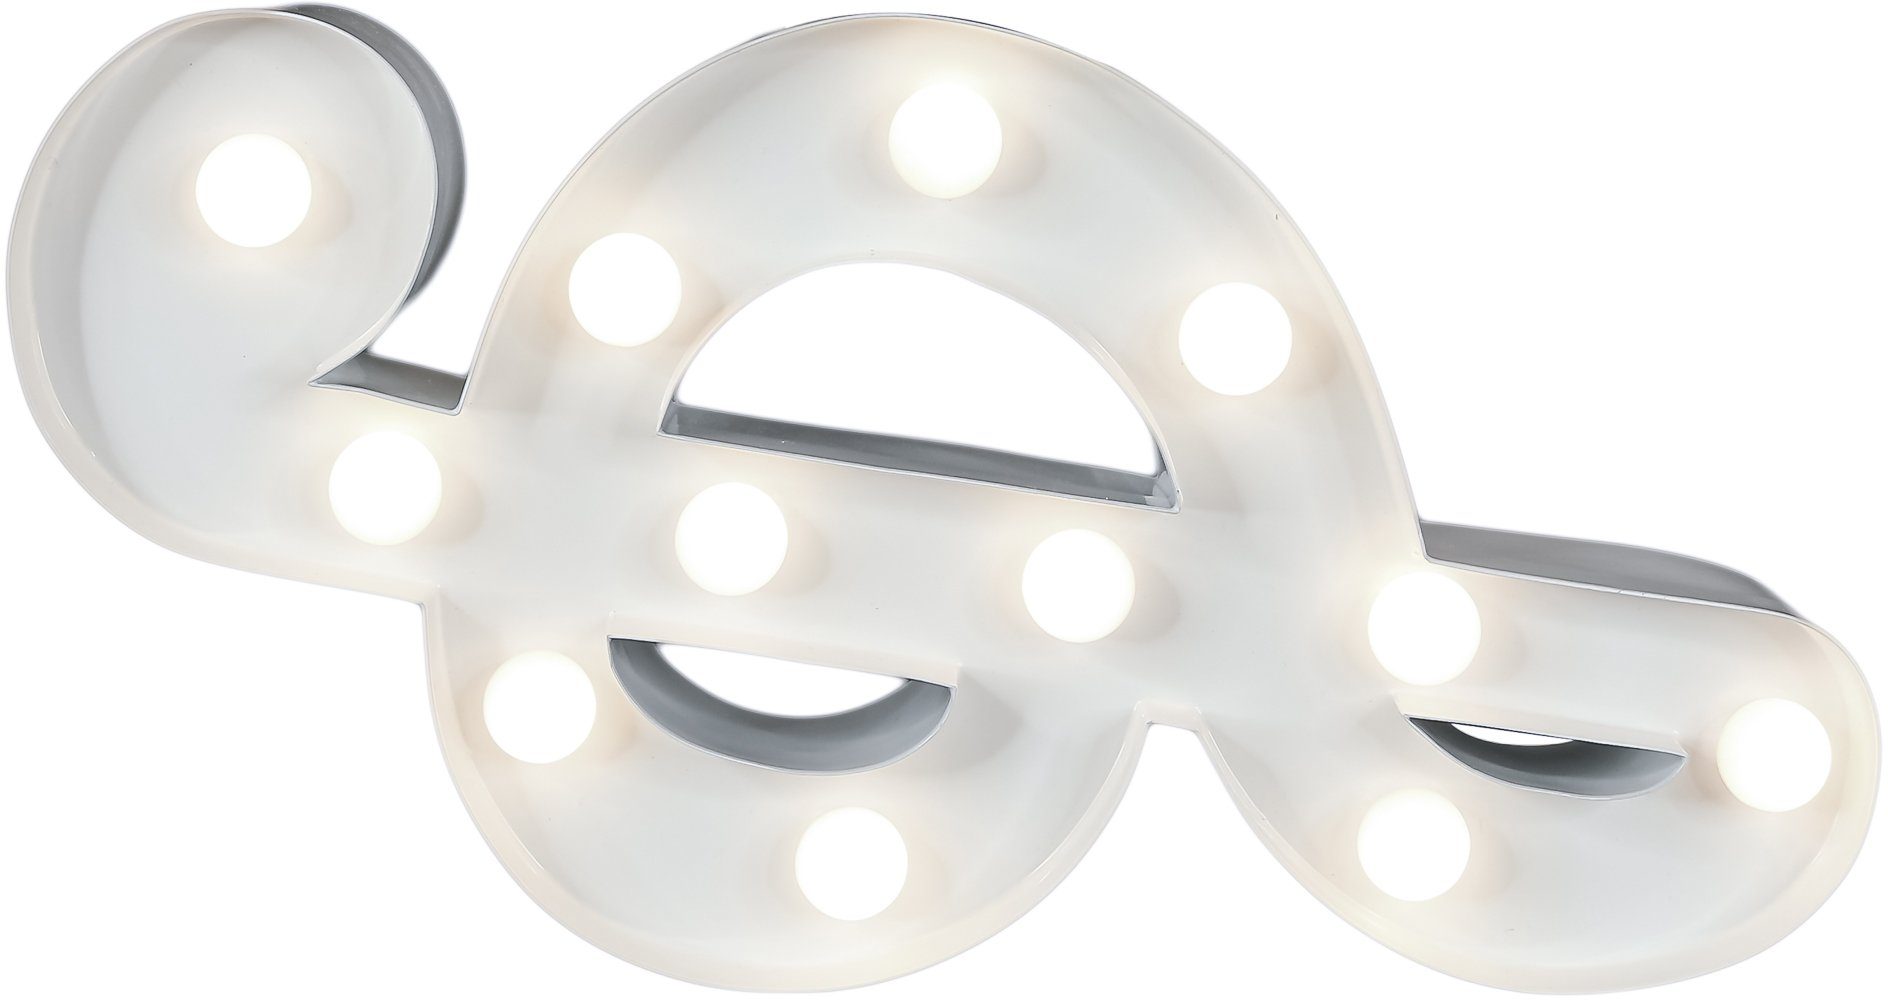 integriert, Tischlampe 12 16x31 Energieverbrauch LED-Technik - LIGHTS Dekolicht cm, Music-Clef Music-Clef, Wandlampe, LEDs LED MARQUEE effiziente durch Geringer fest Warmweiß, LED mit festverbauten